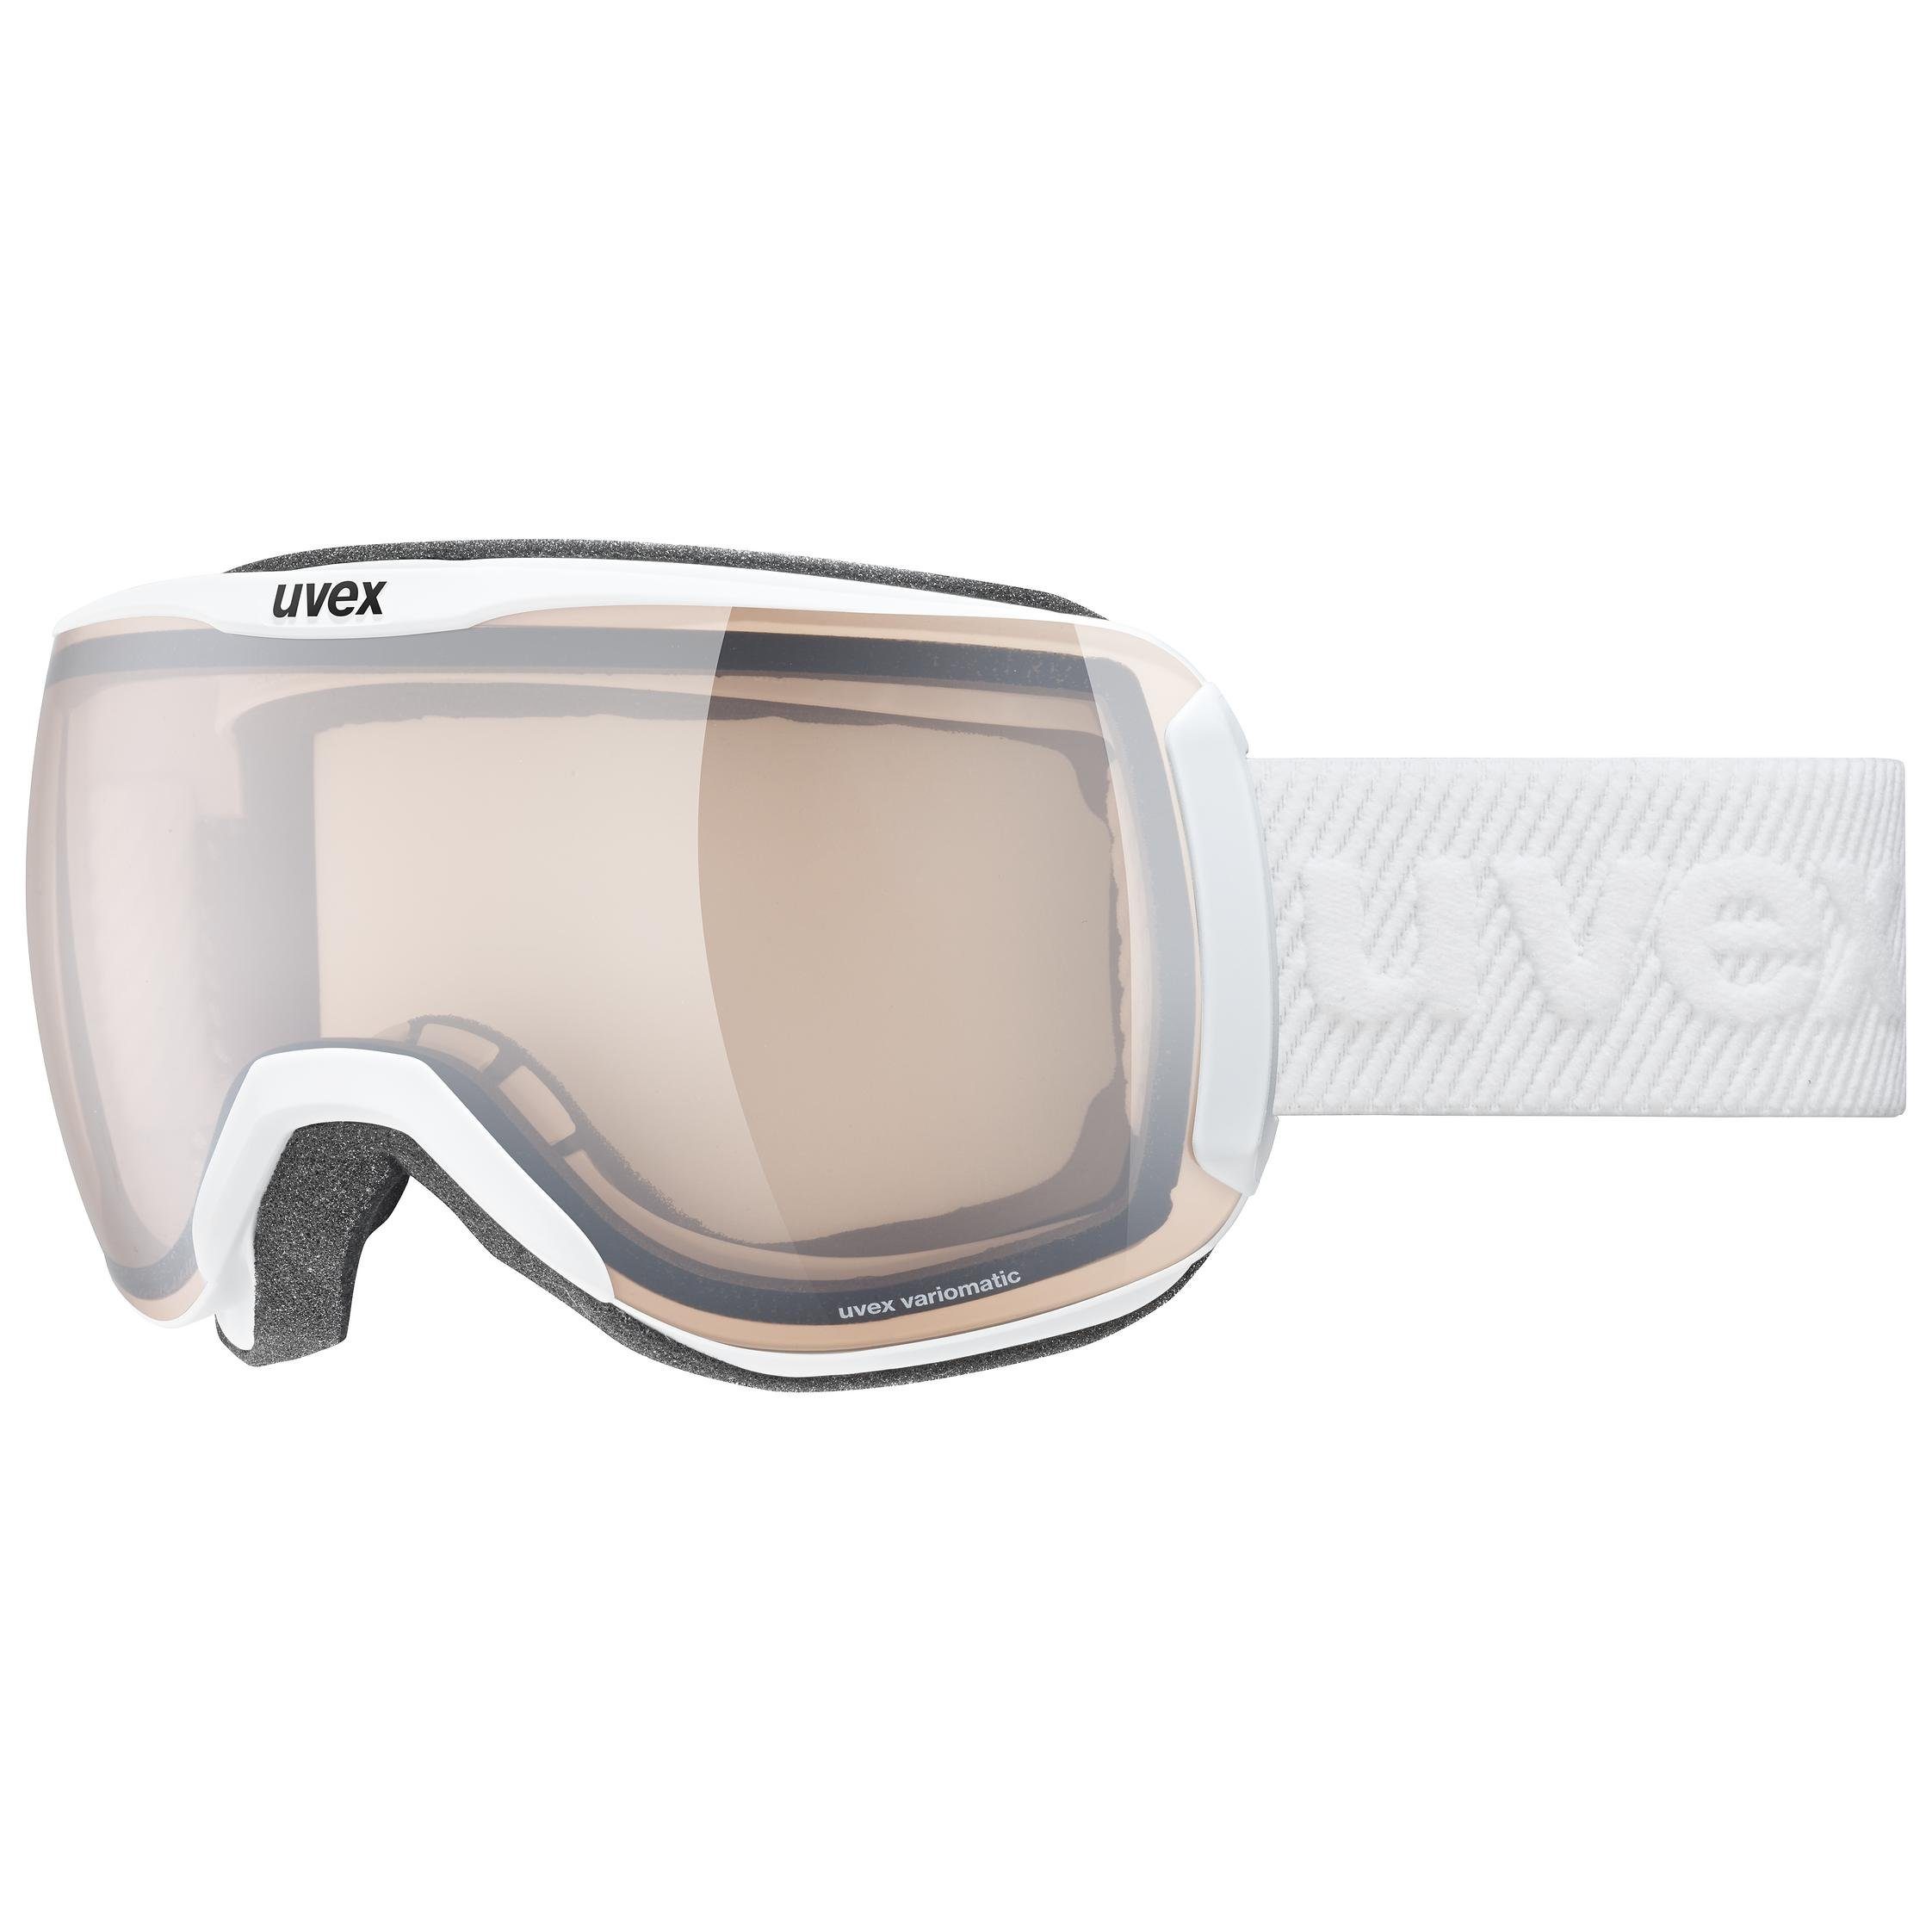 selbsttönend Uvex V Erw., Unisex Skibrille 2100 (1-St), vario matt/vario downhill uvex – white silver-clear Skibrille,